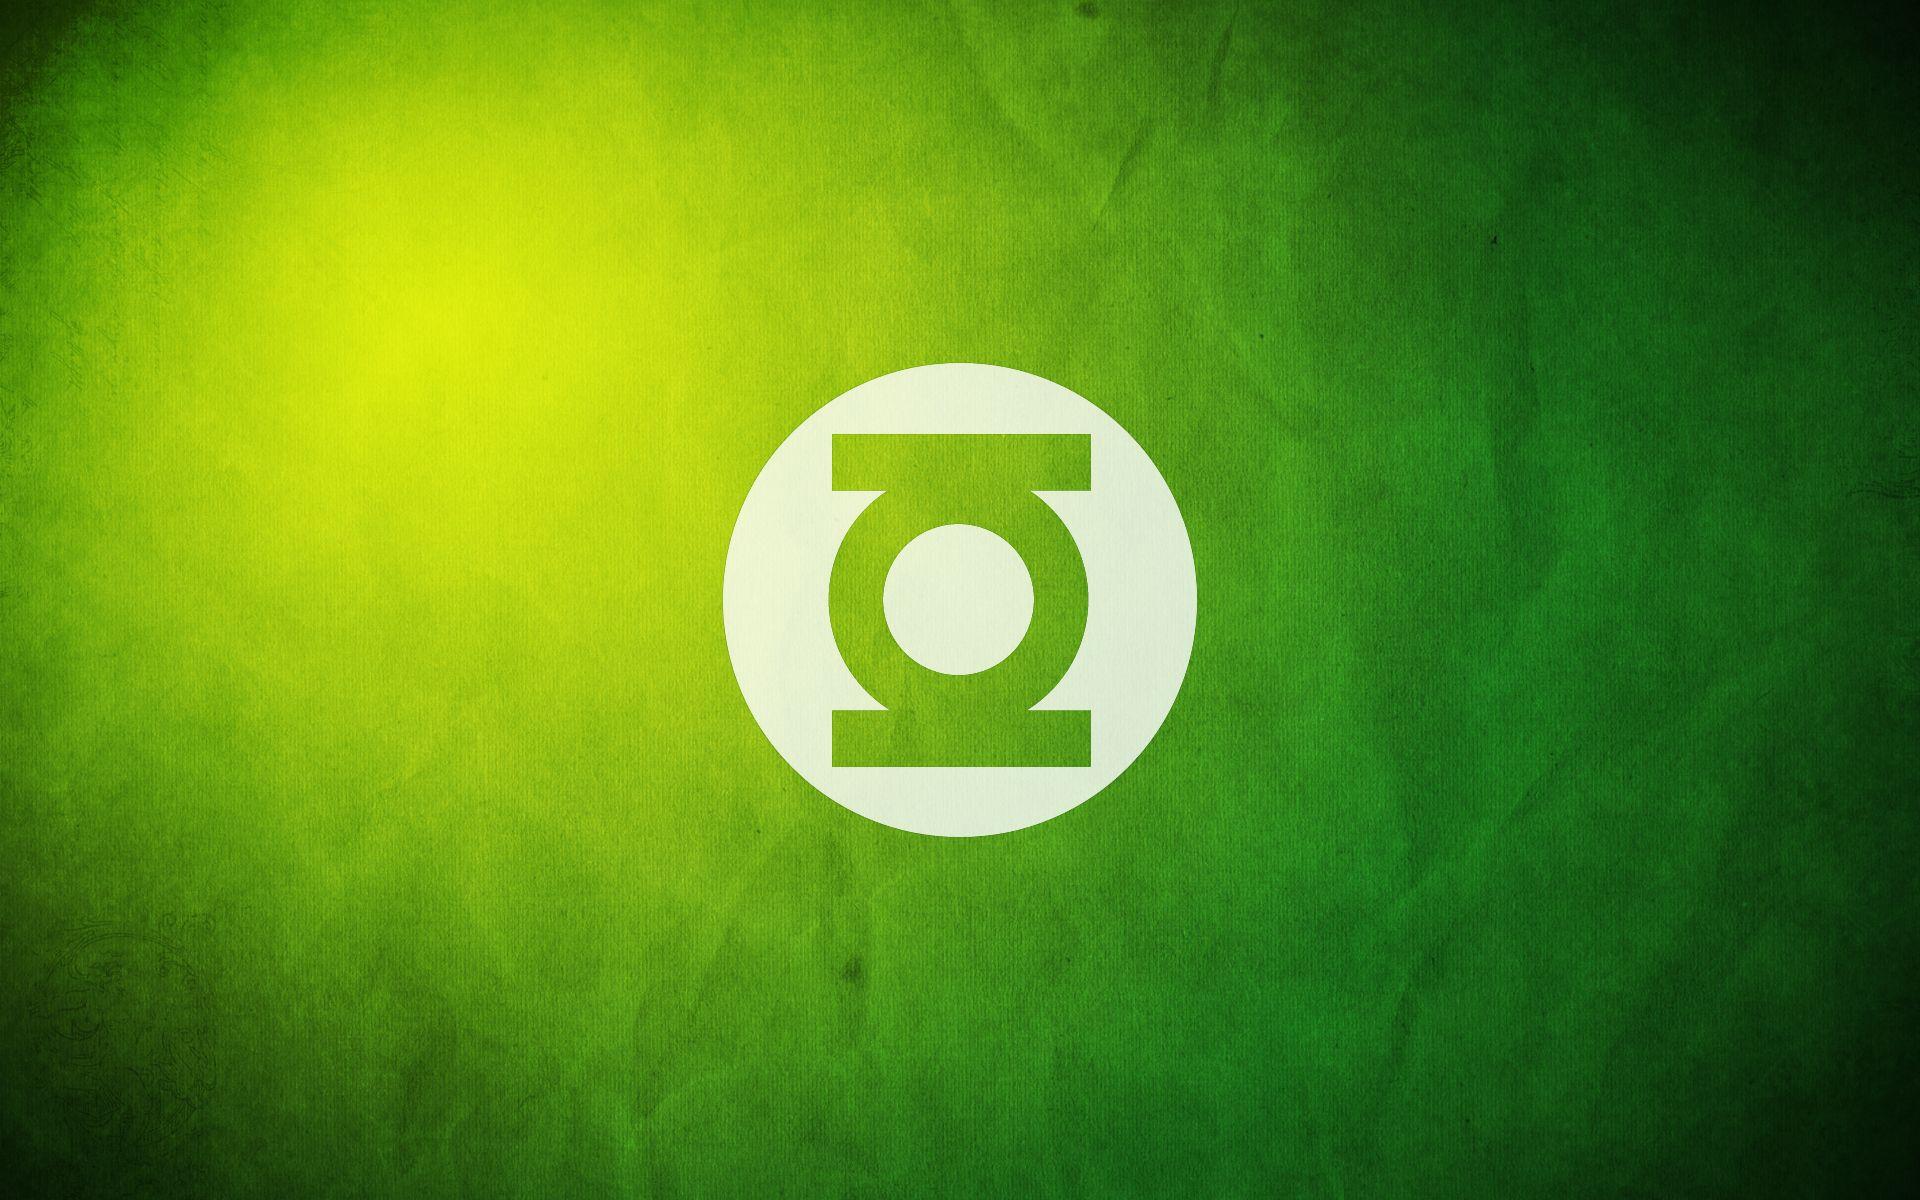 Green Lantern Logo Wallpaper 23536 1920x1200 px